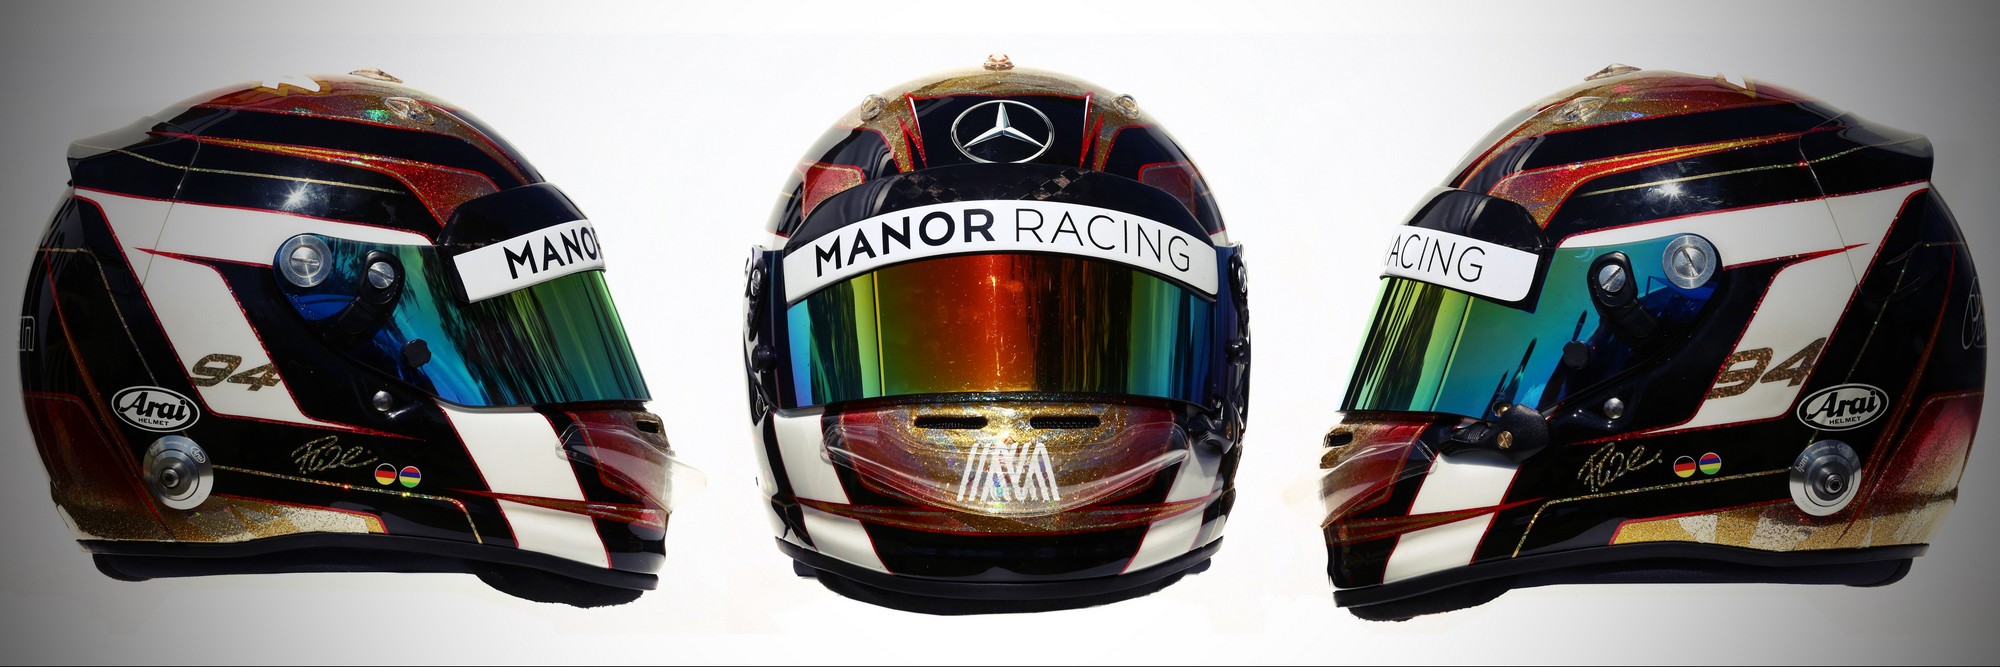 Шлем паскаля Верляйна на сезон 2016 года | 2016 helmet of Pascal Wehrlein